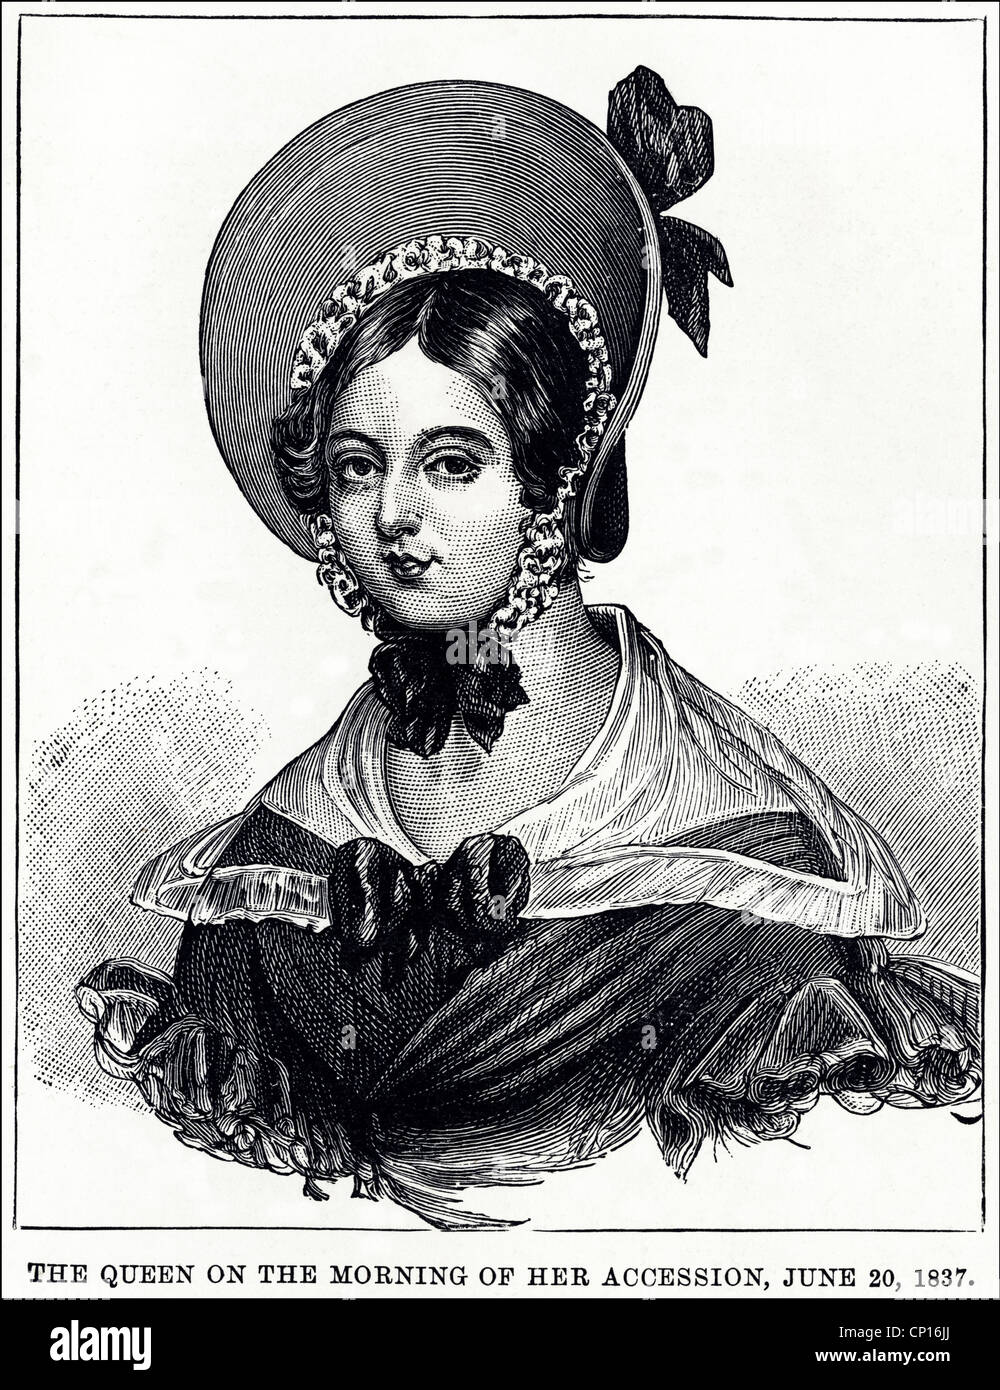 Königin Victoria abgebildet auf der Morgen der 20. Juni 1837. Viktorianische Gravur vom 13. Juni 1887 Stockfoto